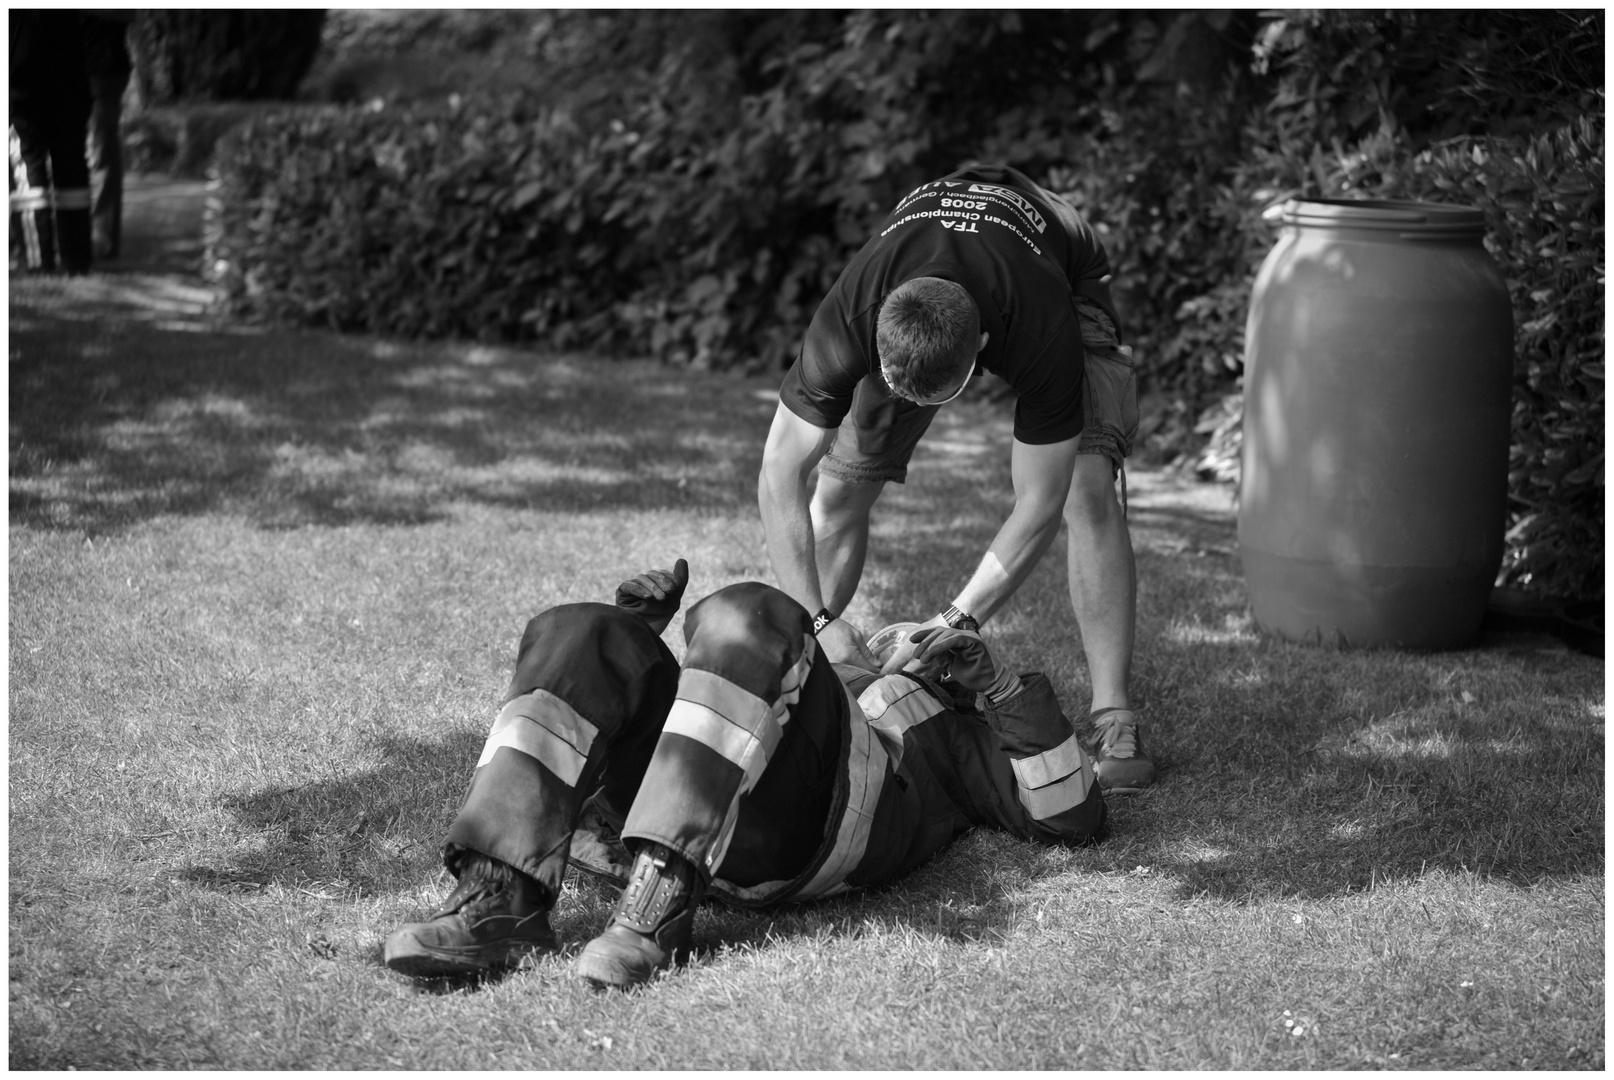 TFA – Toughest Firefighter Alive, 2013 "Erschöpfung"